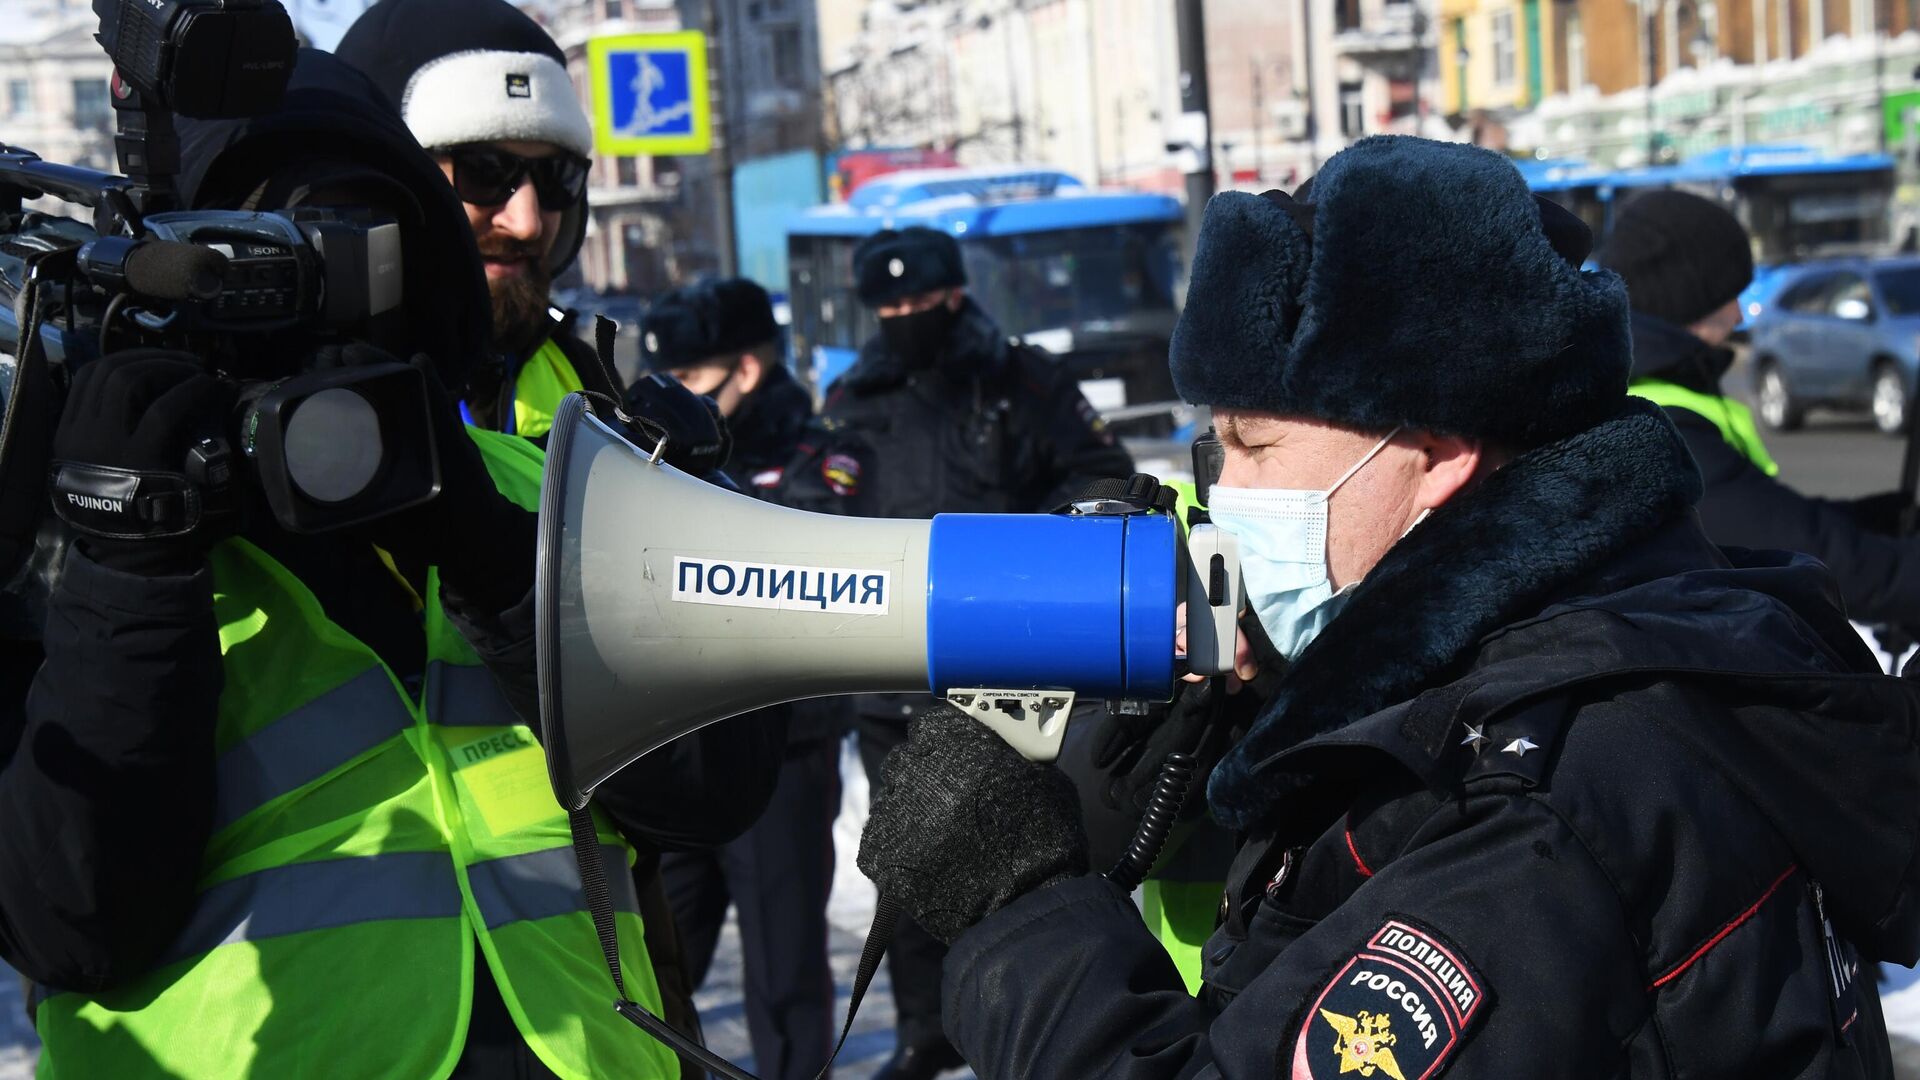 Сотрудник правоохранительных органов и журналисты во время несанкционированной акции протеста во Владивостоке - РИА Новости, 1920, 02.02.2021